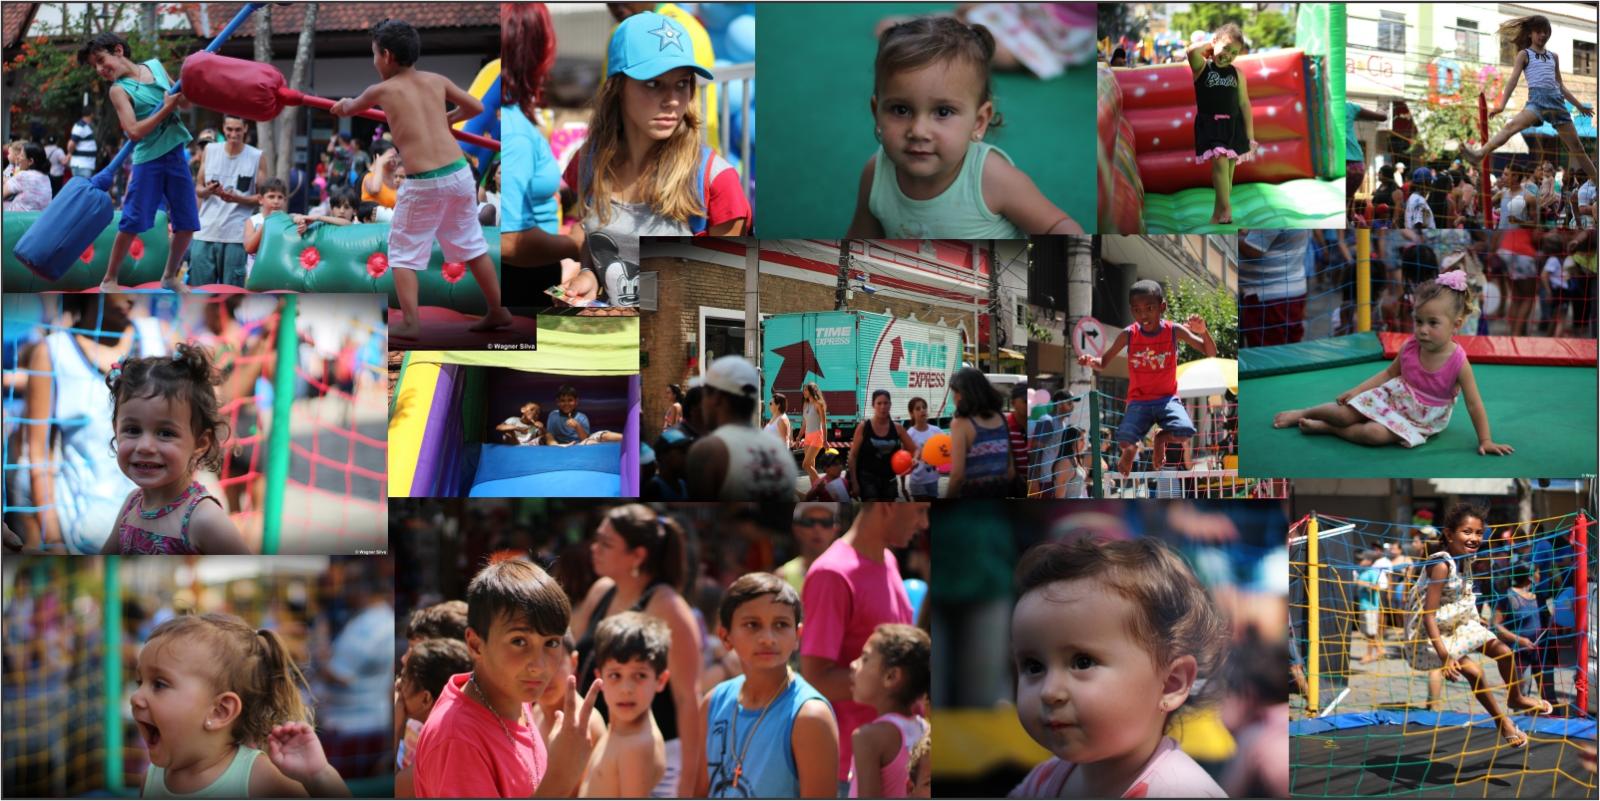 Festas das Crianças | Nova Friburgo / RJ - 12/10/2017